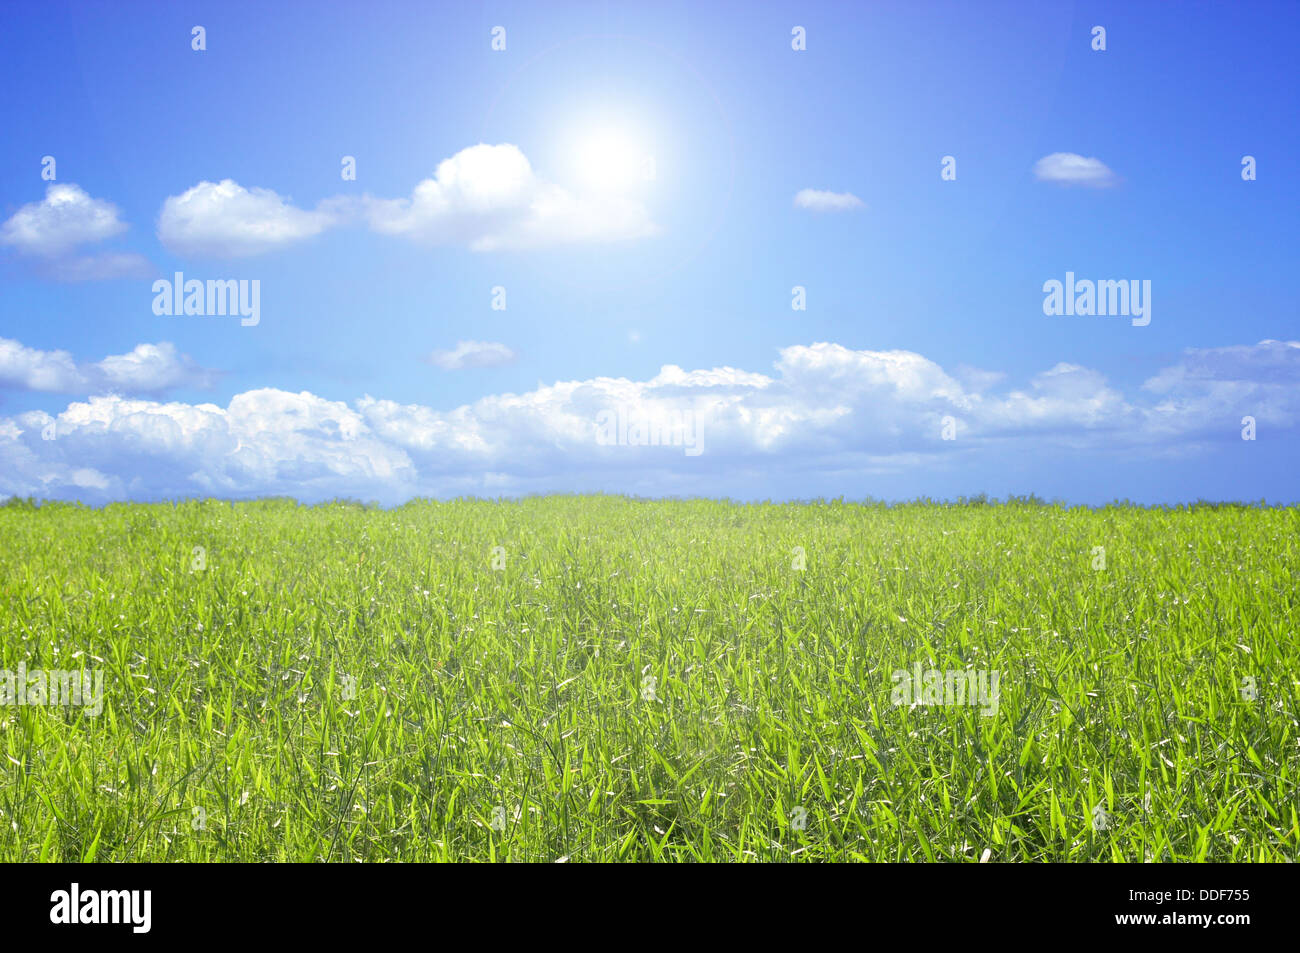 Schönen grünen Rasen mit einem blauen Himmel und die Sonne scheint in der Mitte Stockfoto